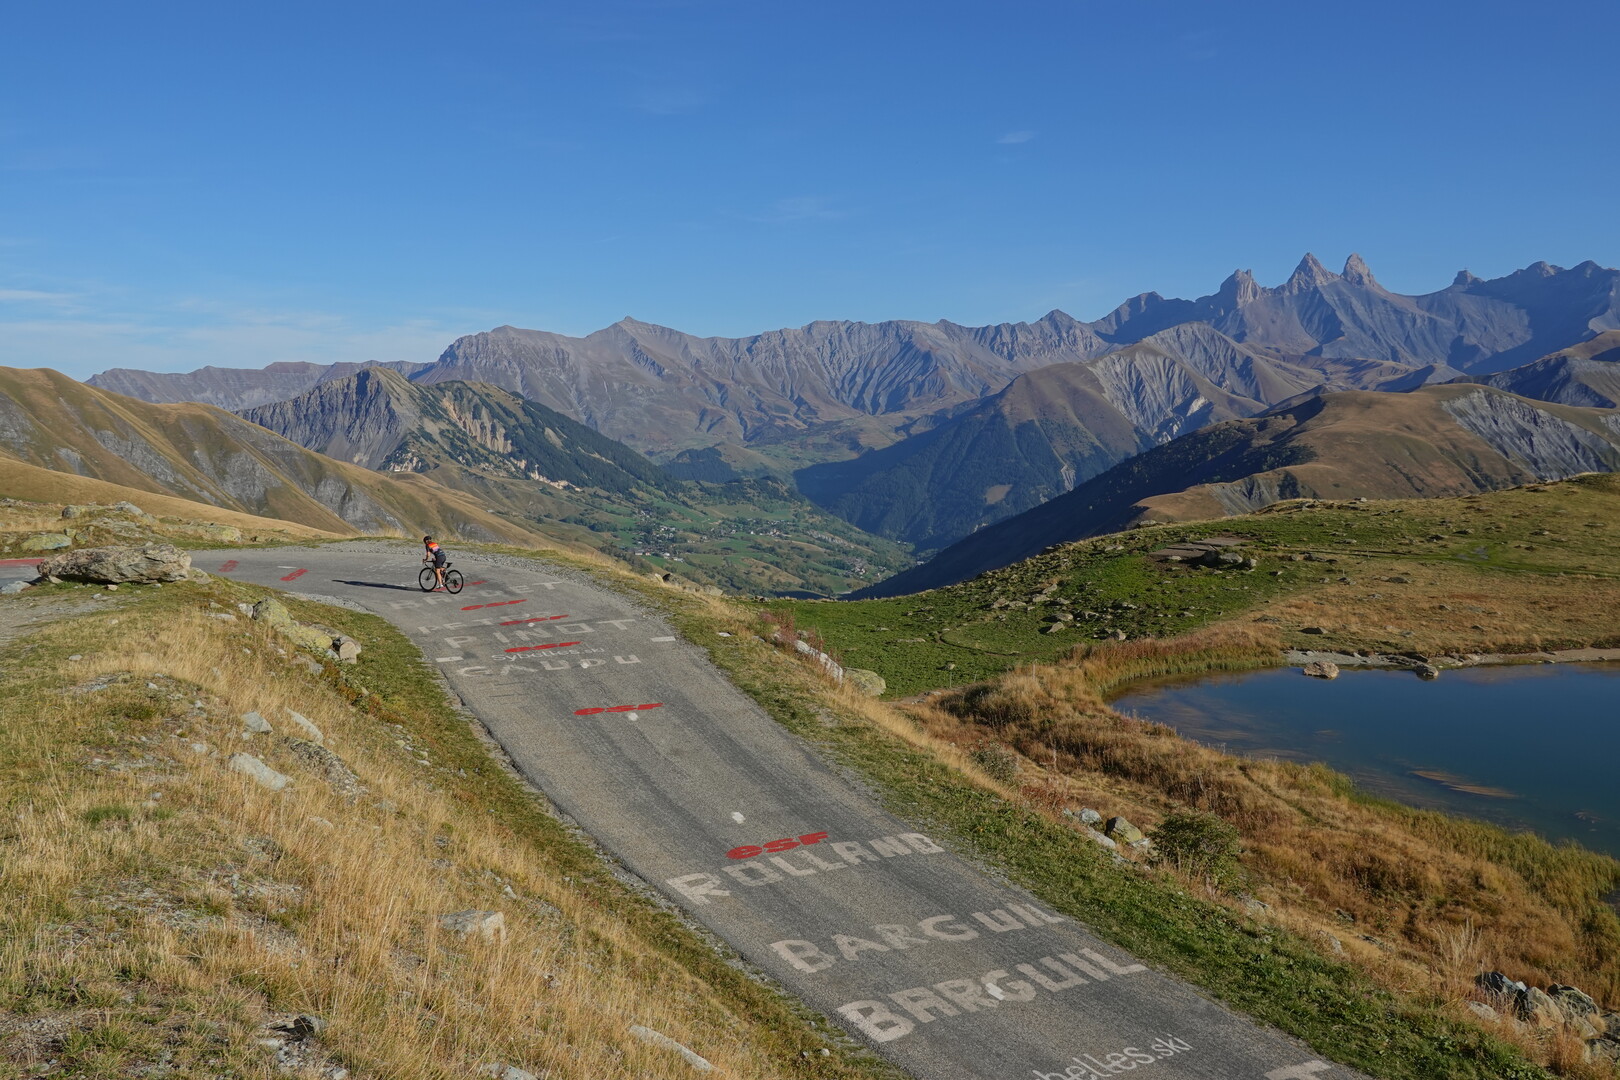 Schöner geht's kaum: schmale Straße ohne Verkehr, die Aiguilles d'Arves und das Vallée de l'Arvan im Hintergrund, mit Bergsee und Radfahrerin.